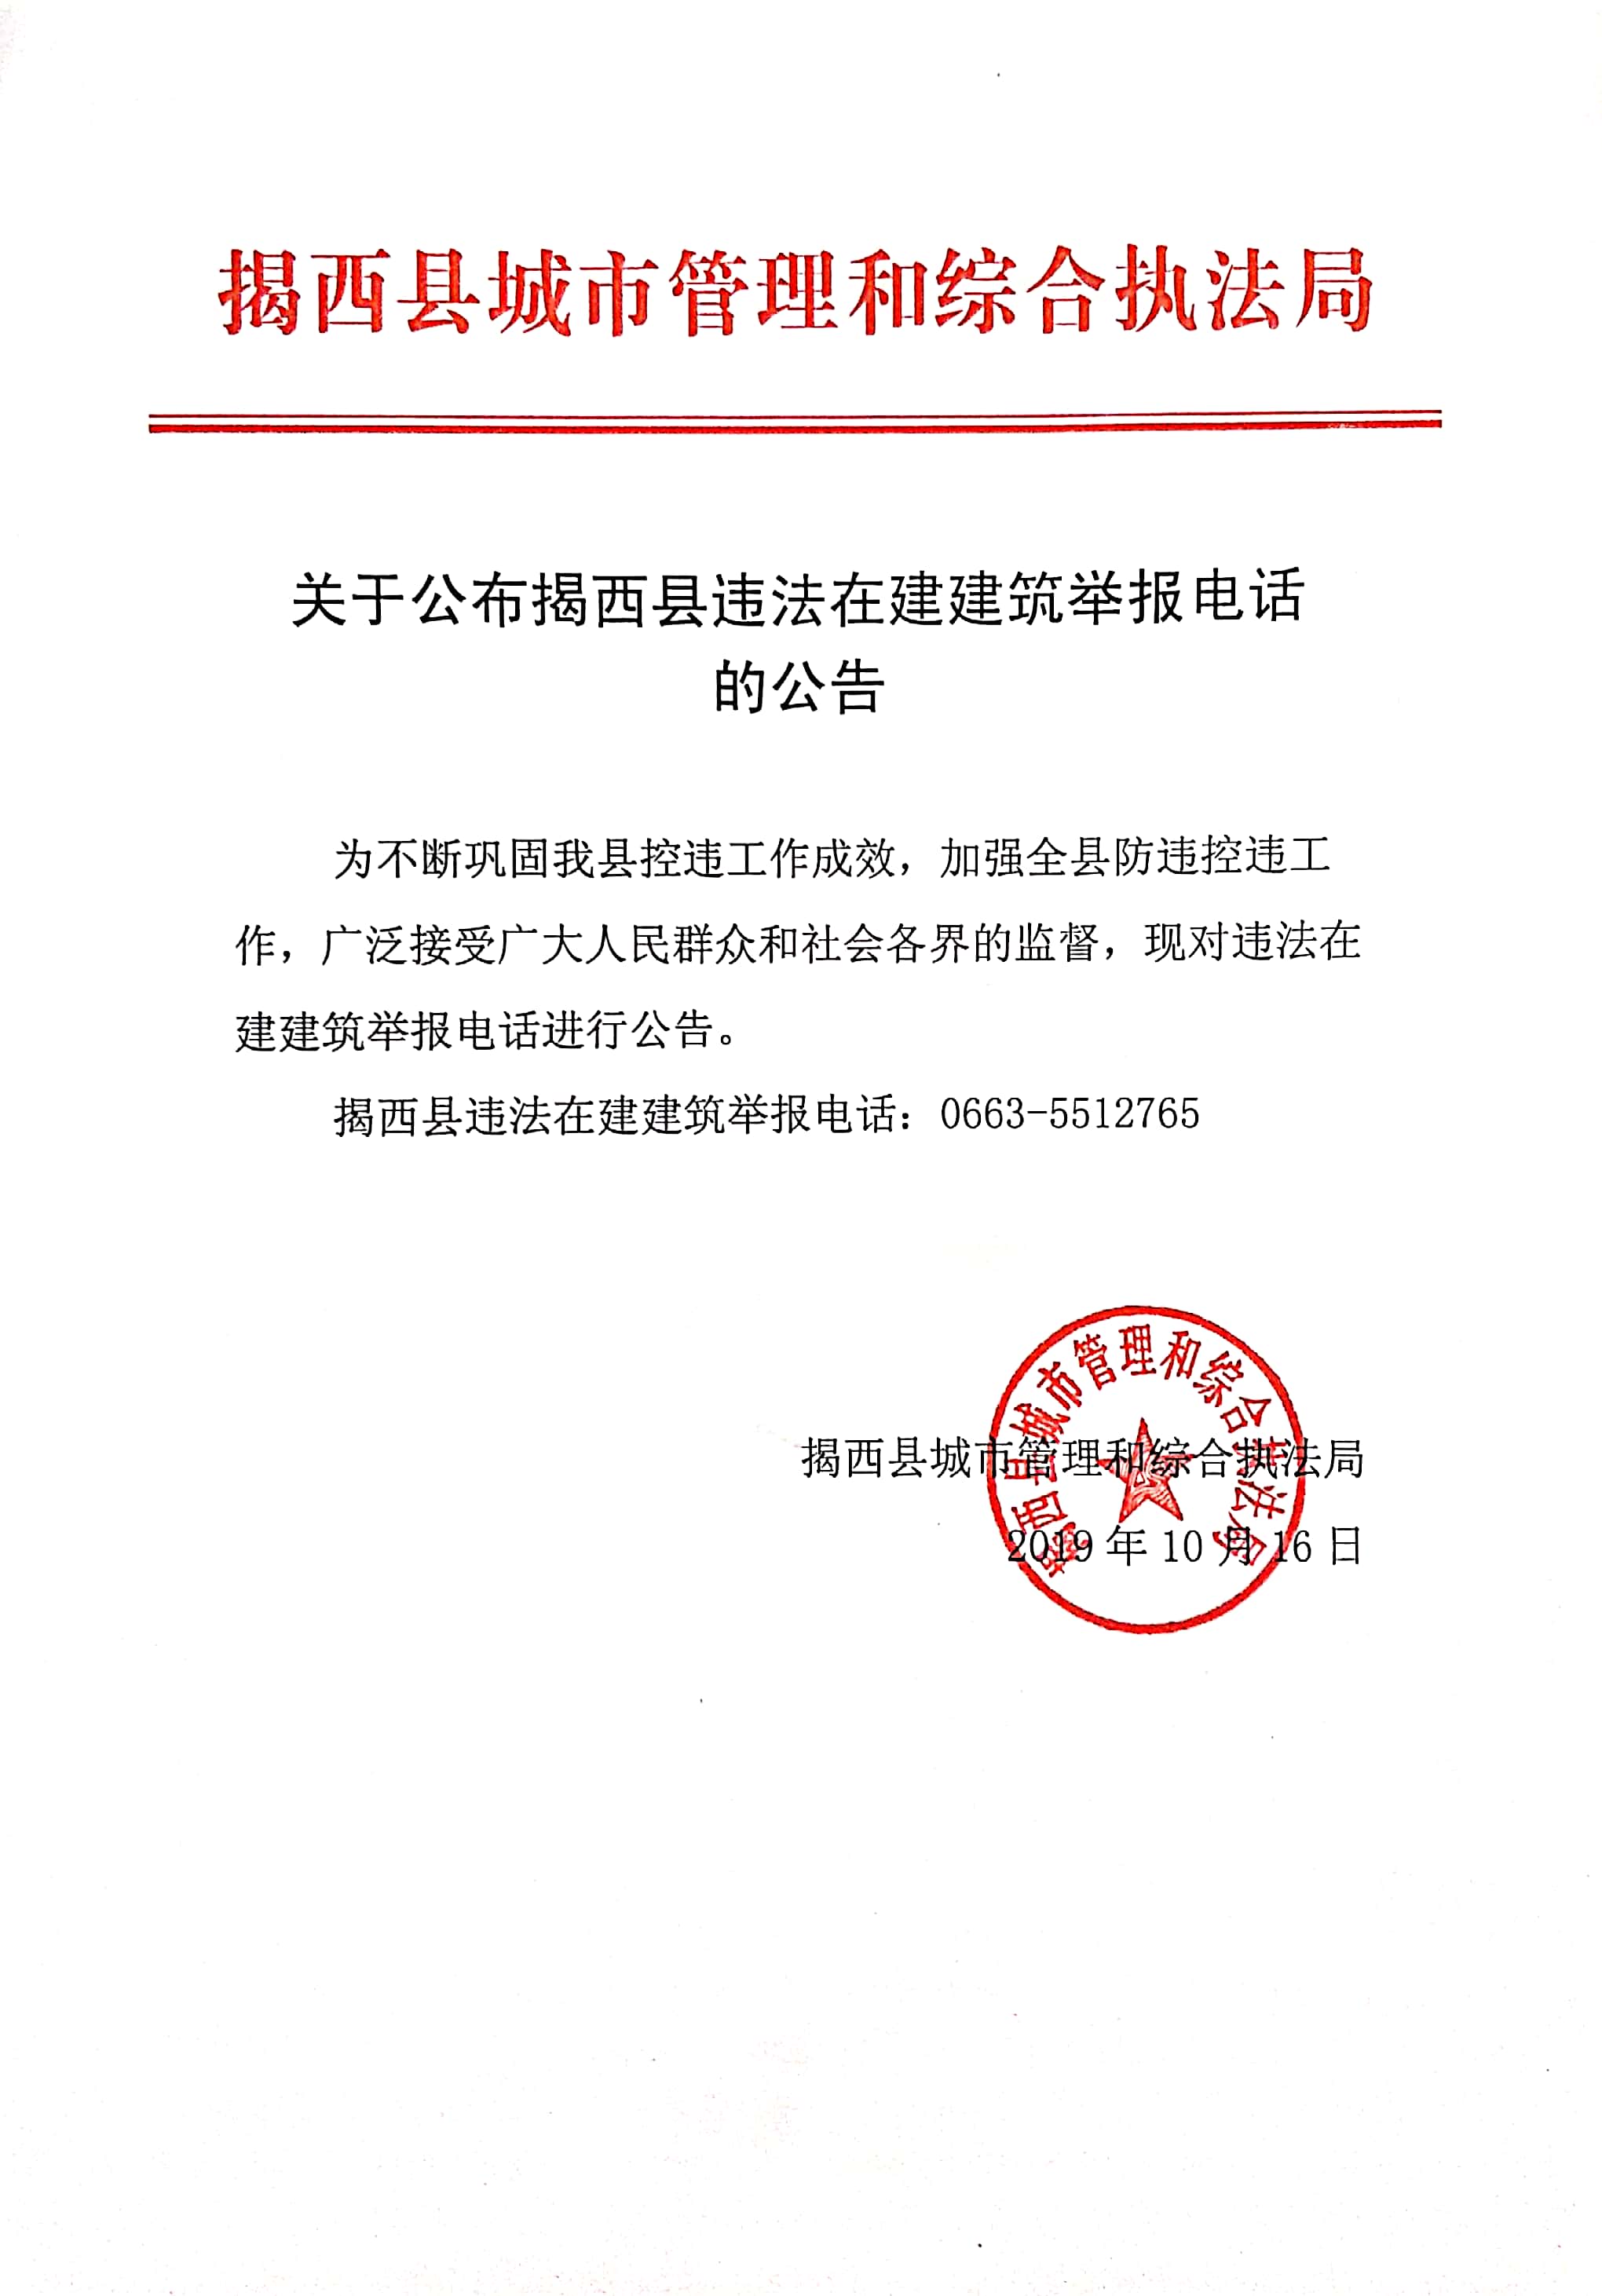 关于公布揭西县违法在建建筑举报电话的公告.jpg